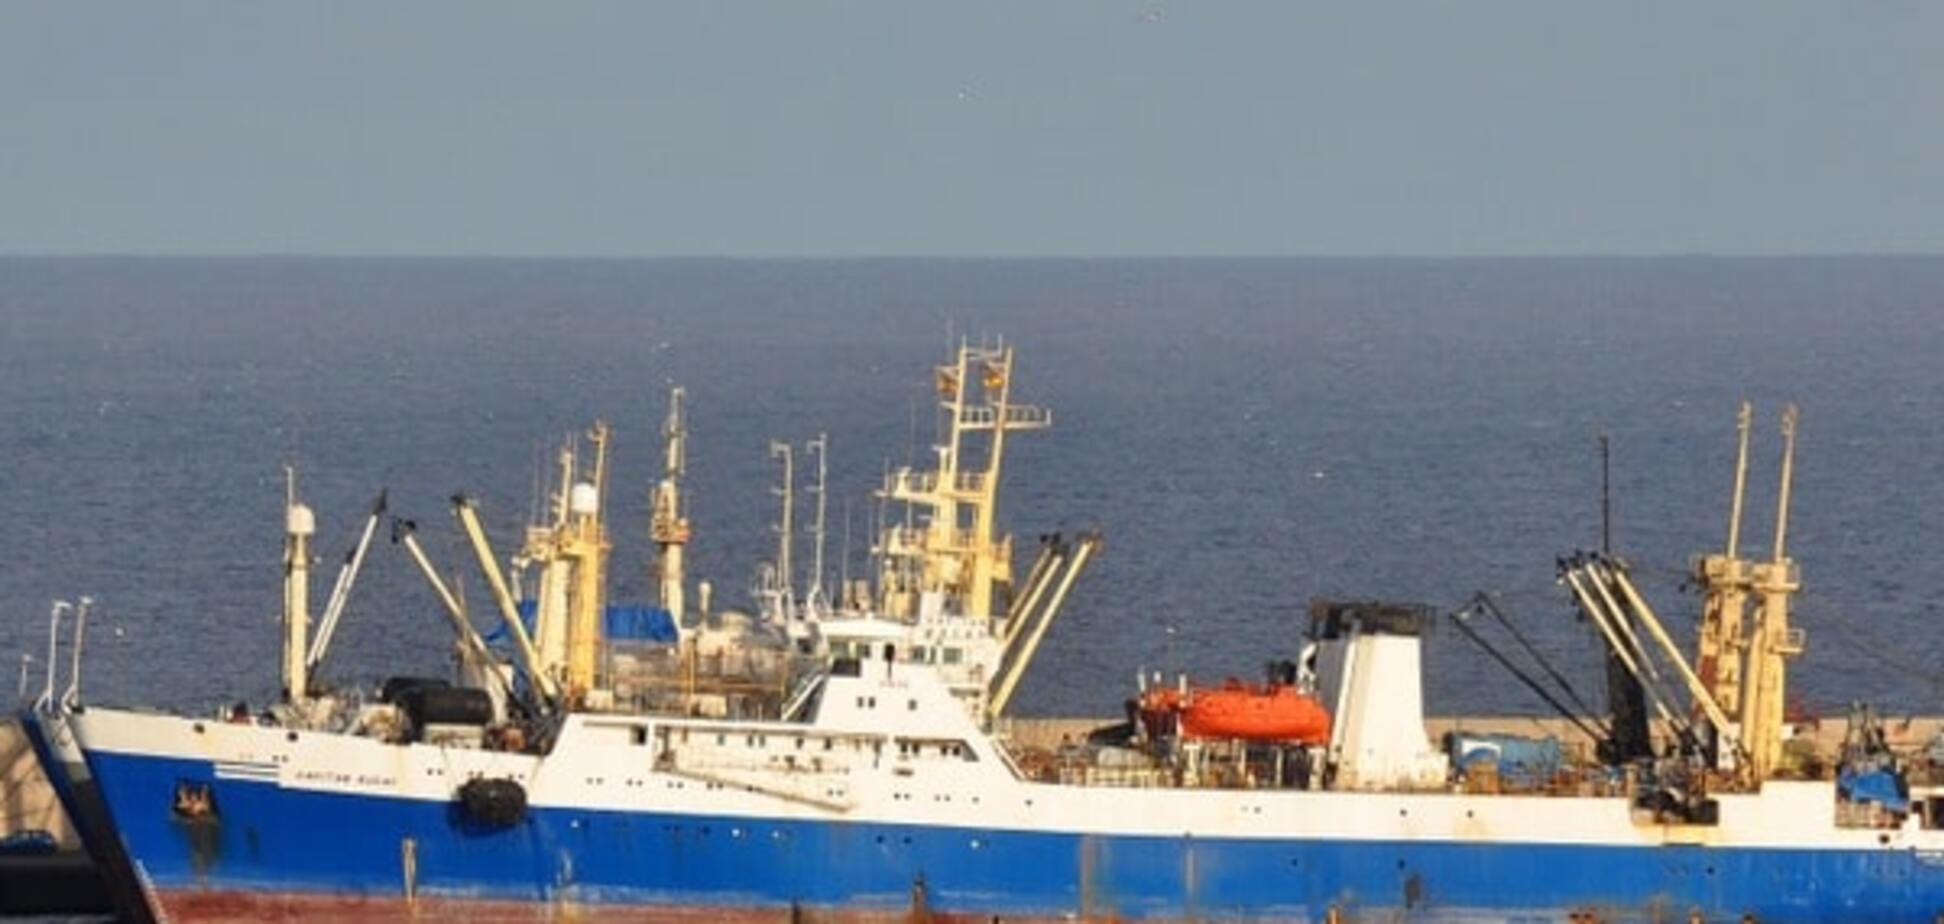 Рыбопромышленный флот: первая прибыль за 19 лет, или Почему стоит подумать  о приватизации